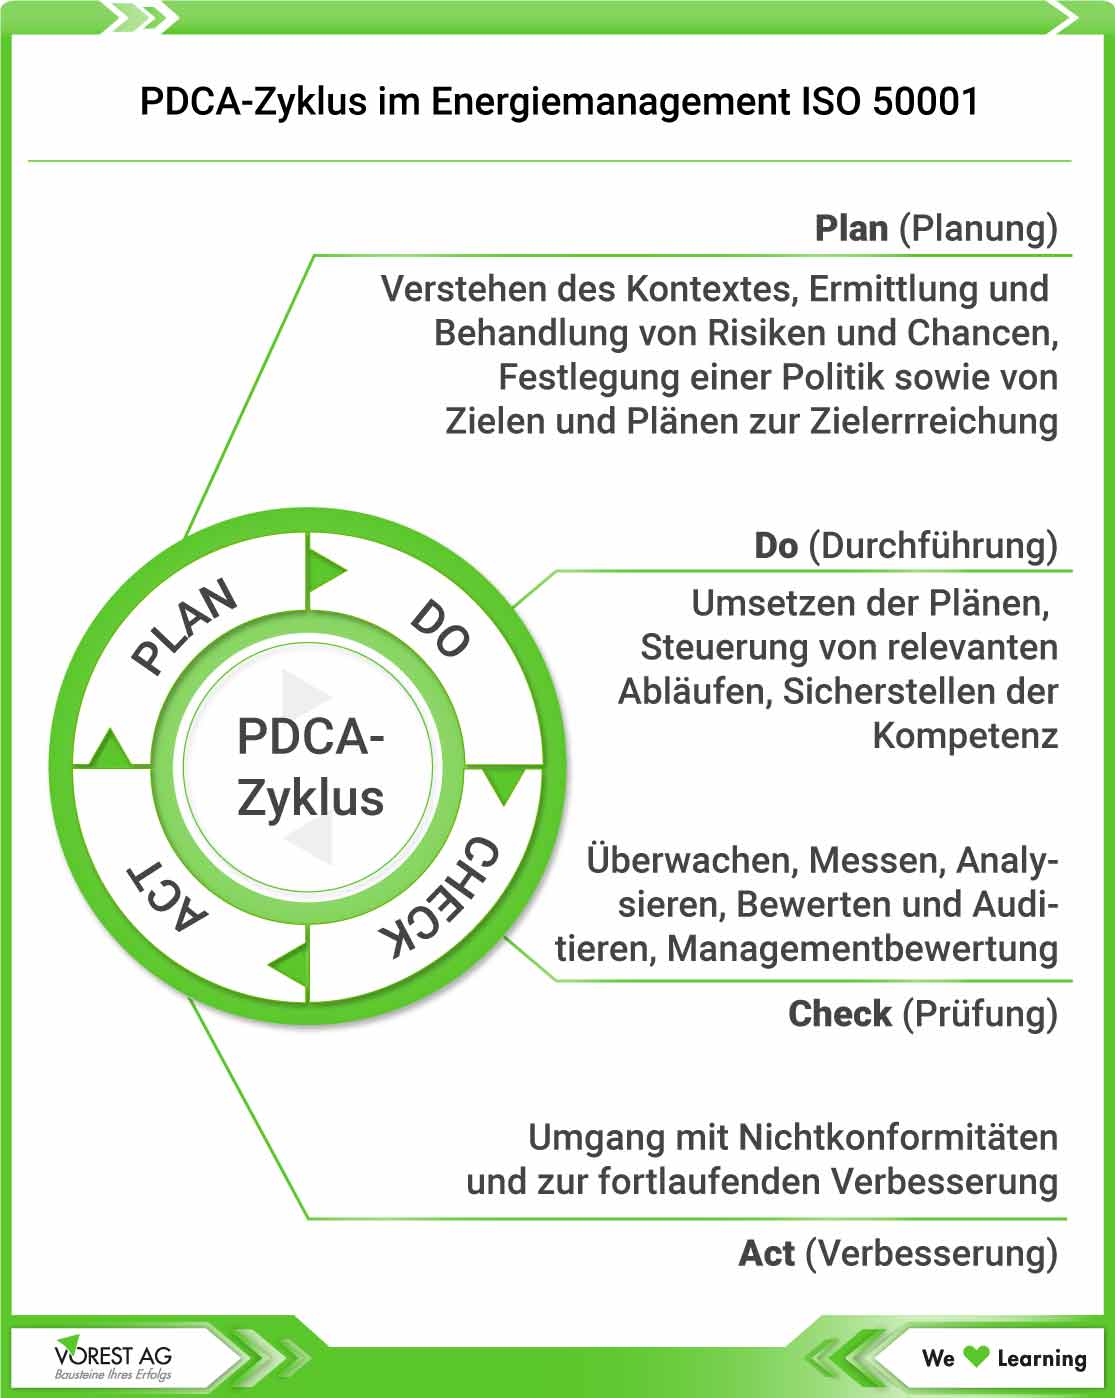 Energiemanagement System ISO 50001 im Kontext zum PDCA-Zyklus